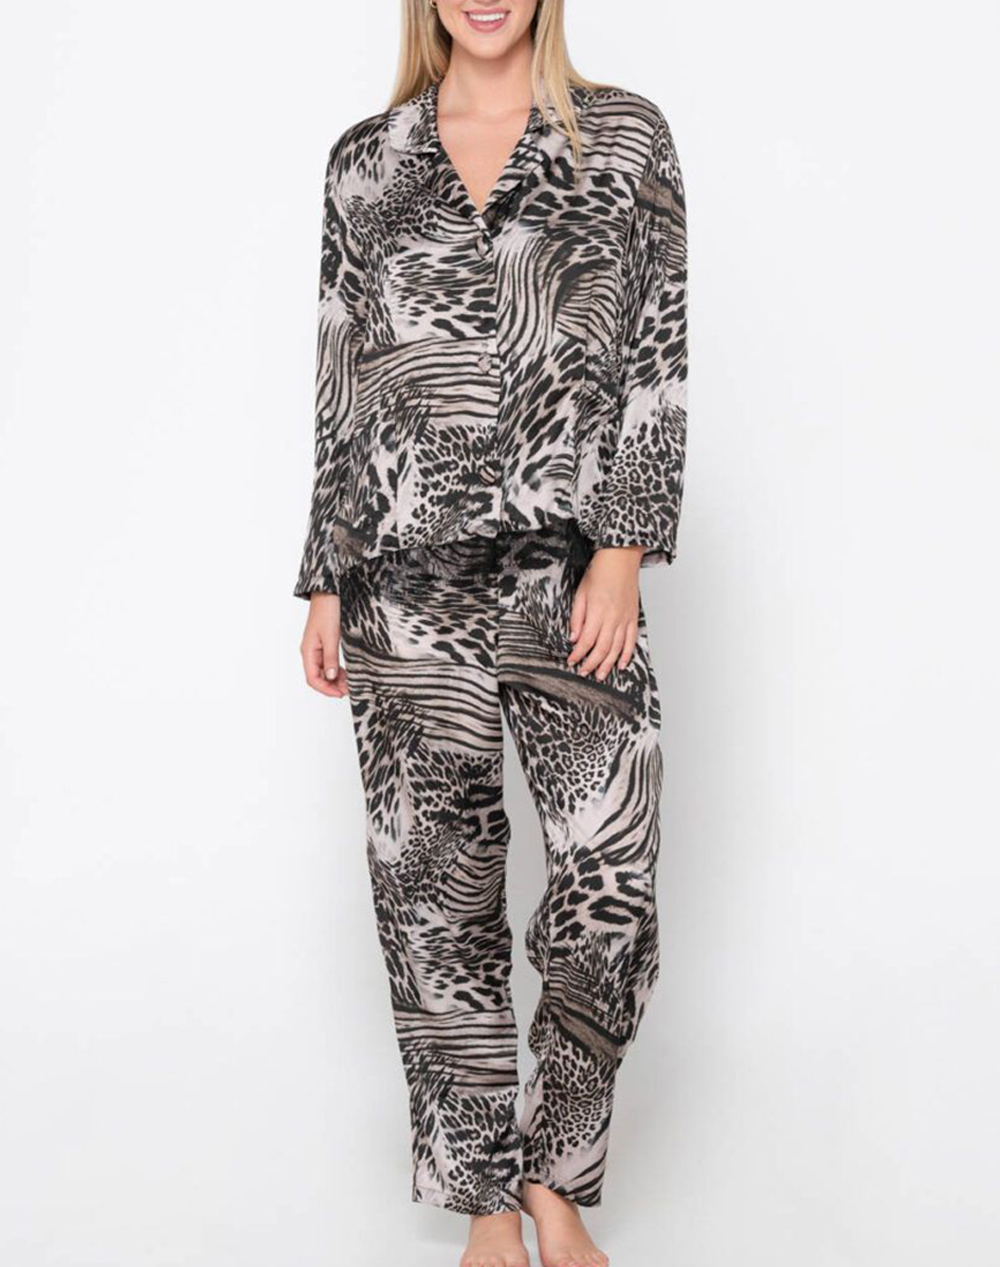 LUNA Prestige animal pyjama set 82105-45 Multi 3710PLUNA1400001_XR26427